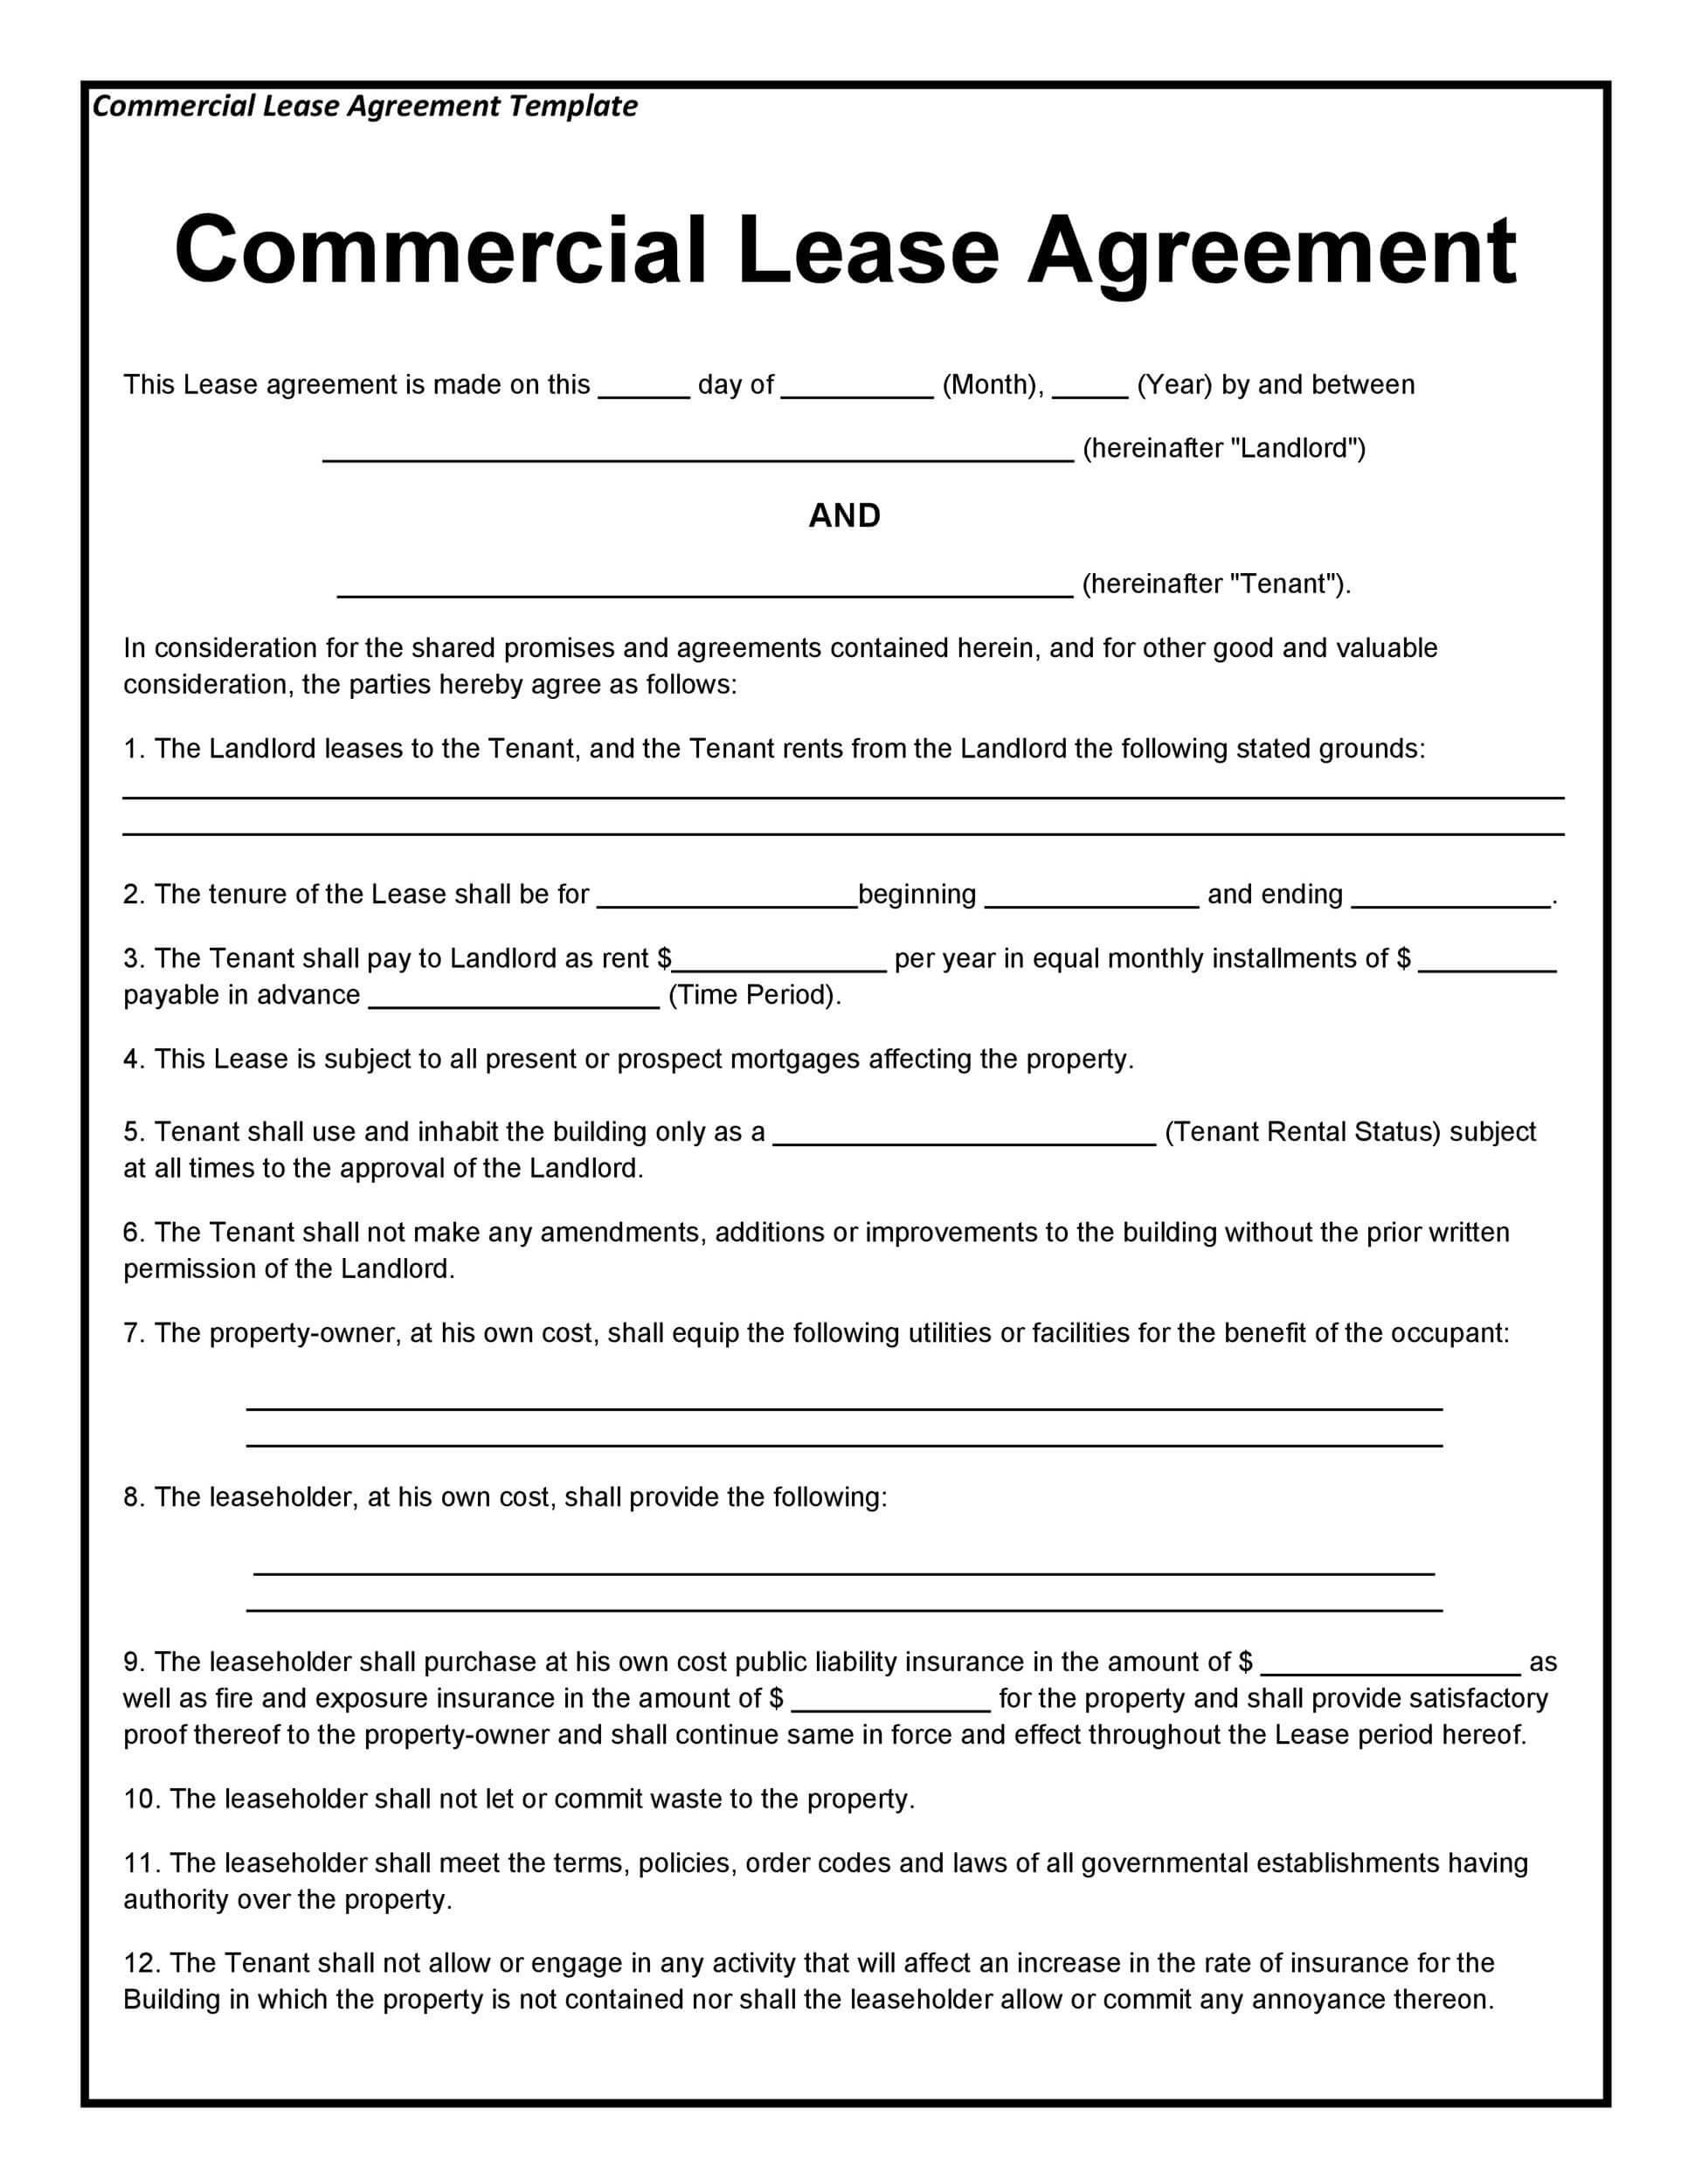 Insiders "Best Commercial Lease Clauses" Consulted Adam Leitman In building rental agreement template